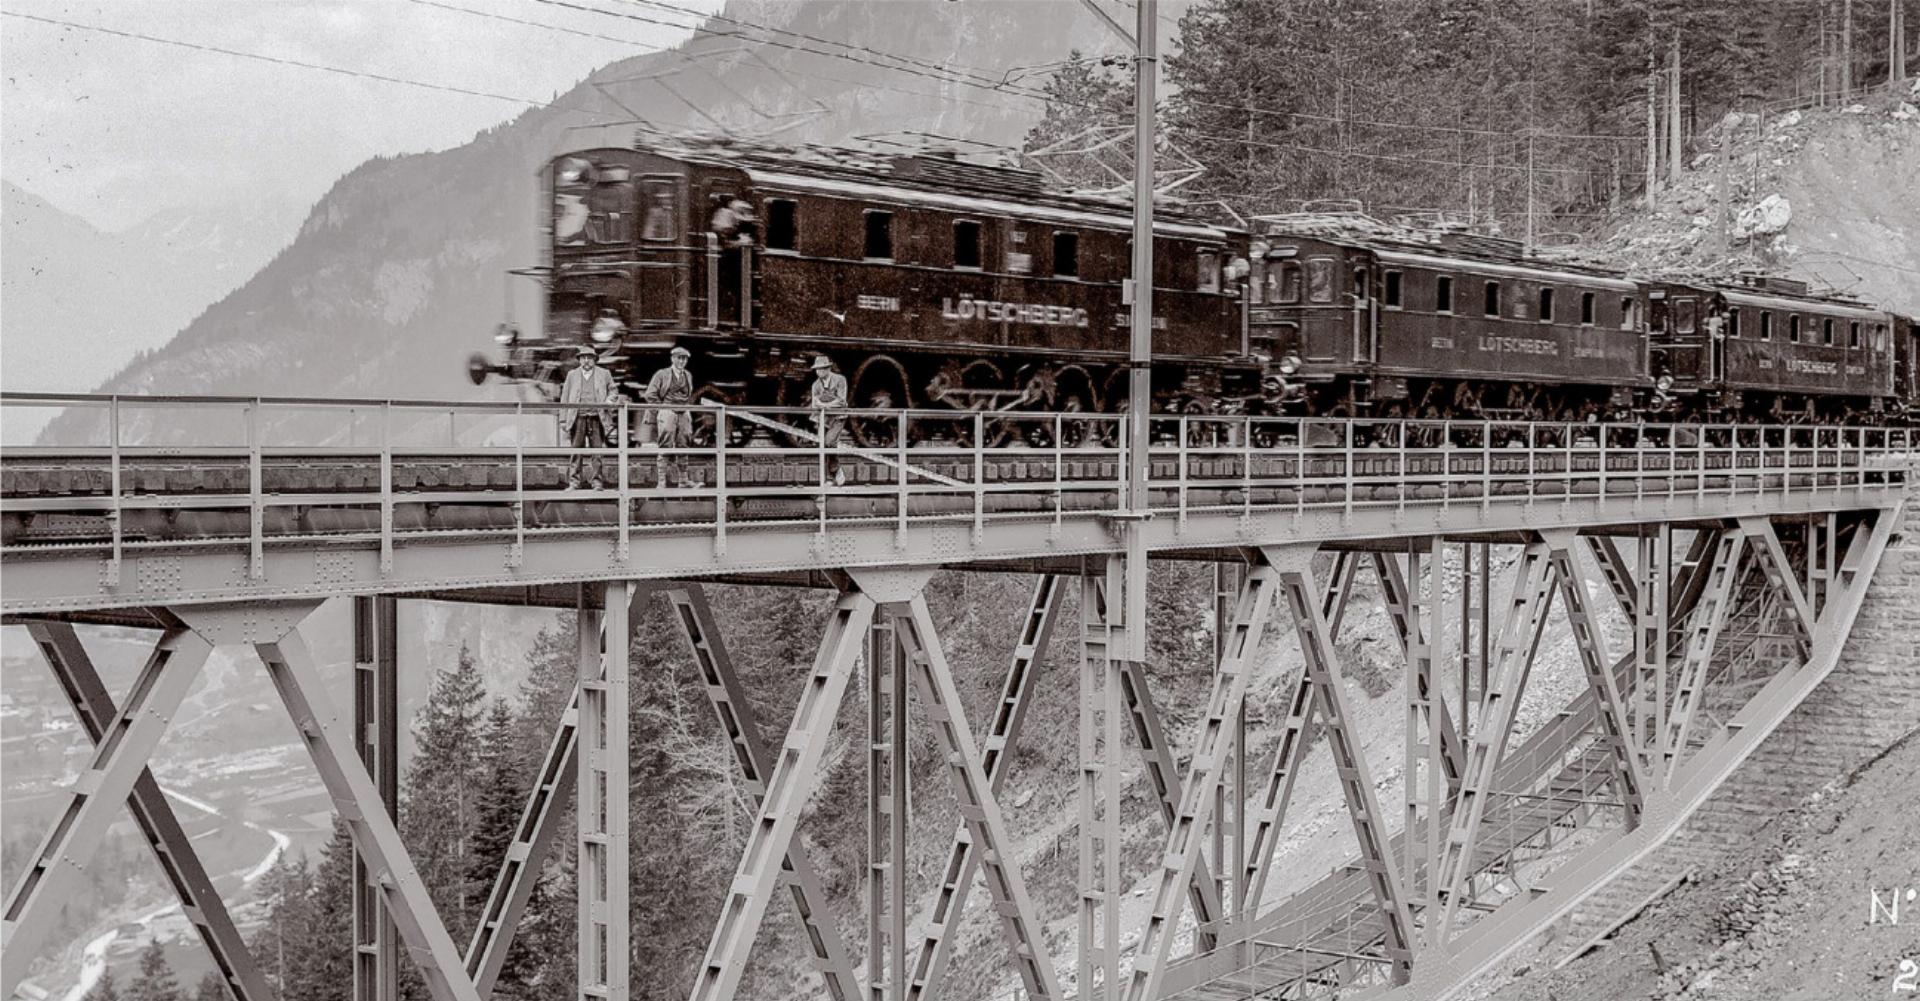 Hält die neue Brücke? Testfahrt mit dem ersten Zug am 22. Mai 1913 auf der spektakulären Sarengrabenbrücke kurz vor Kandersteg. BILD: BLS-MEDIENDATENBANK